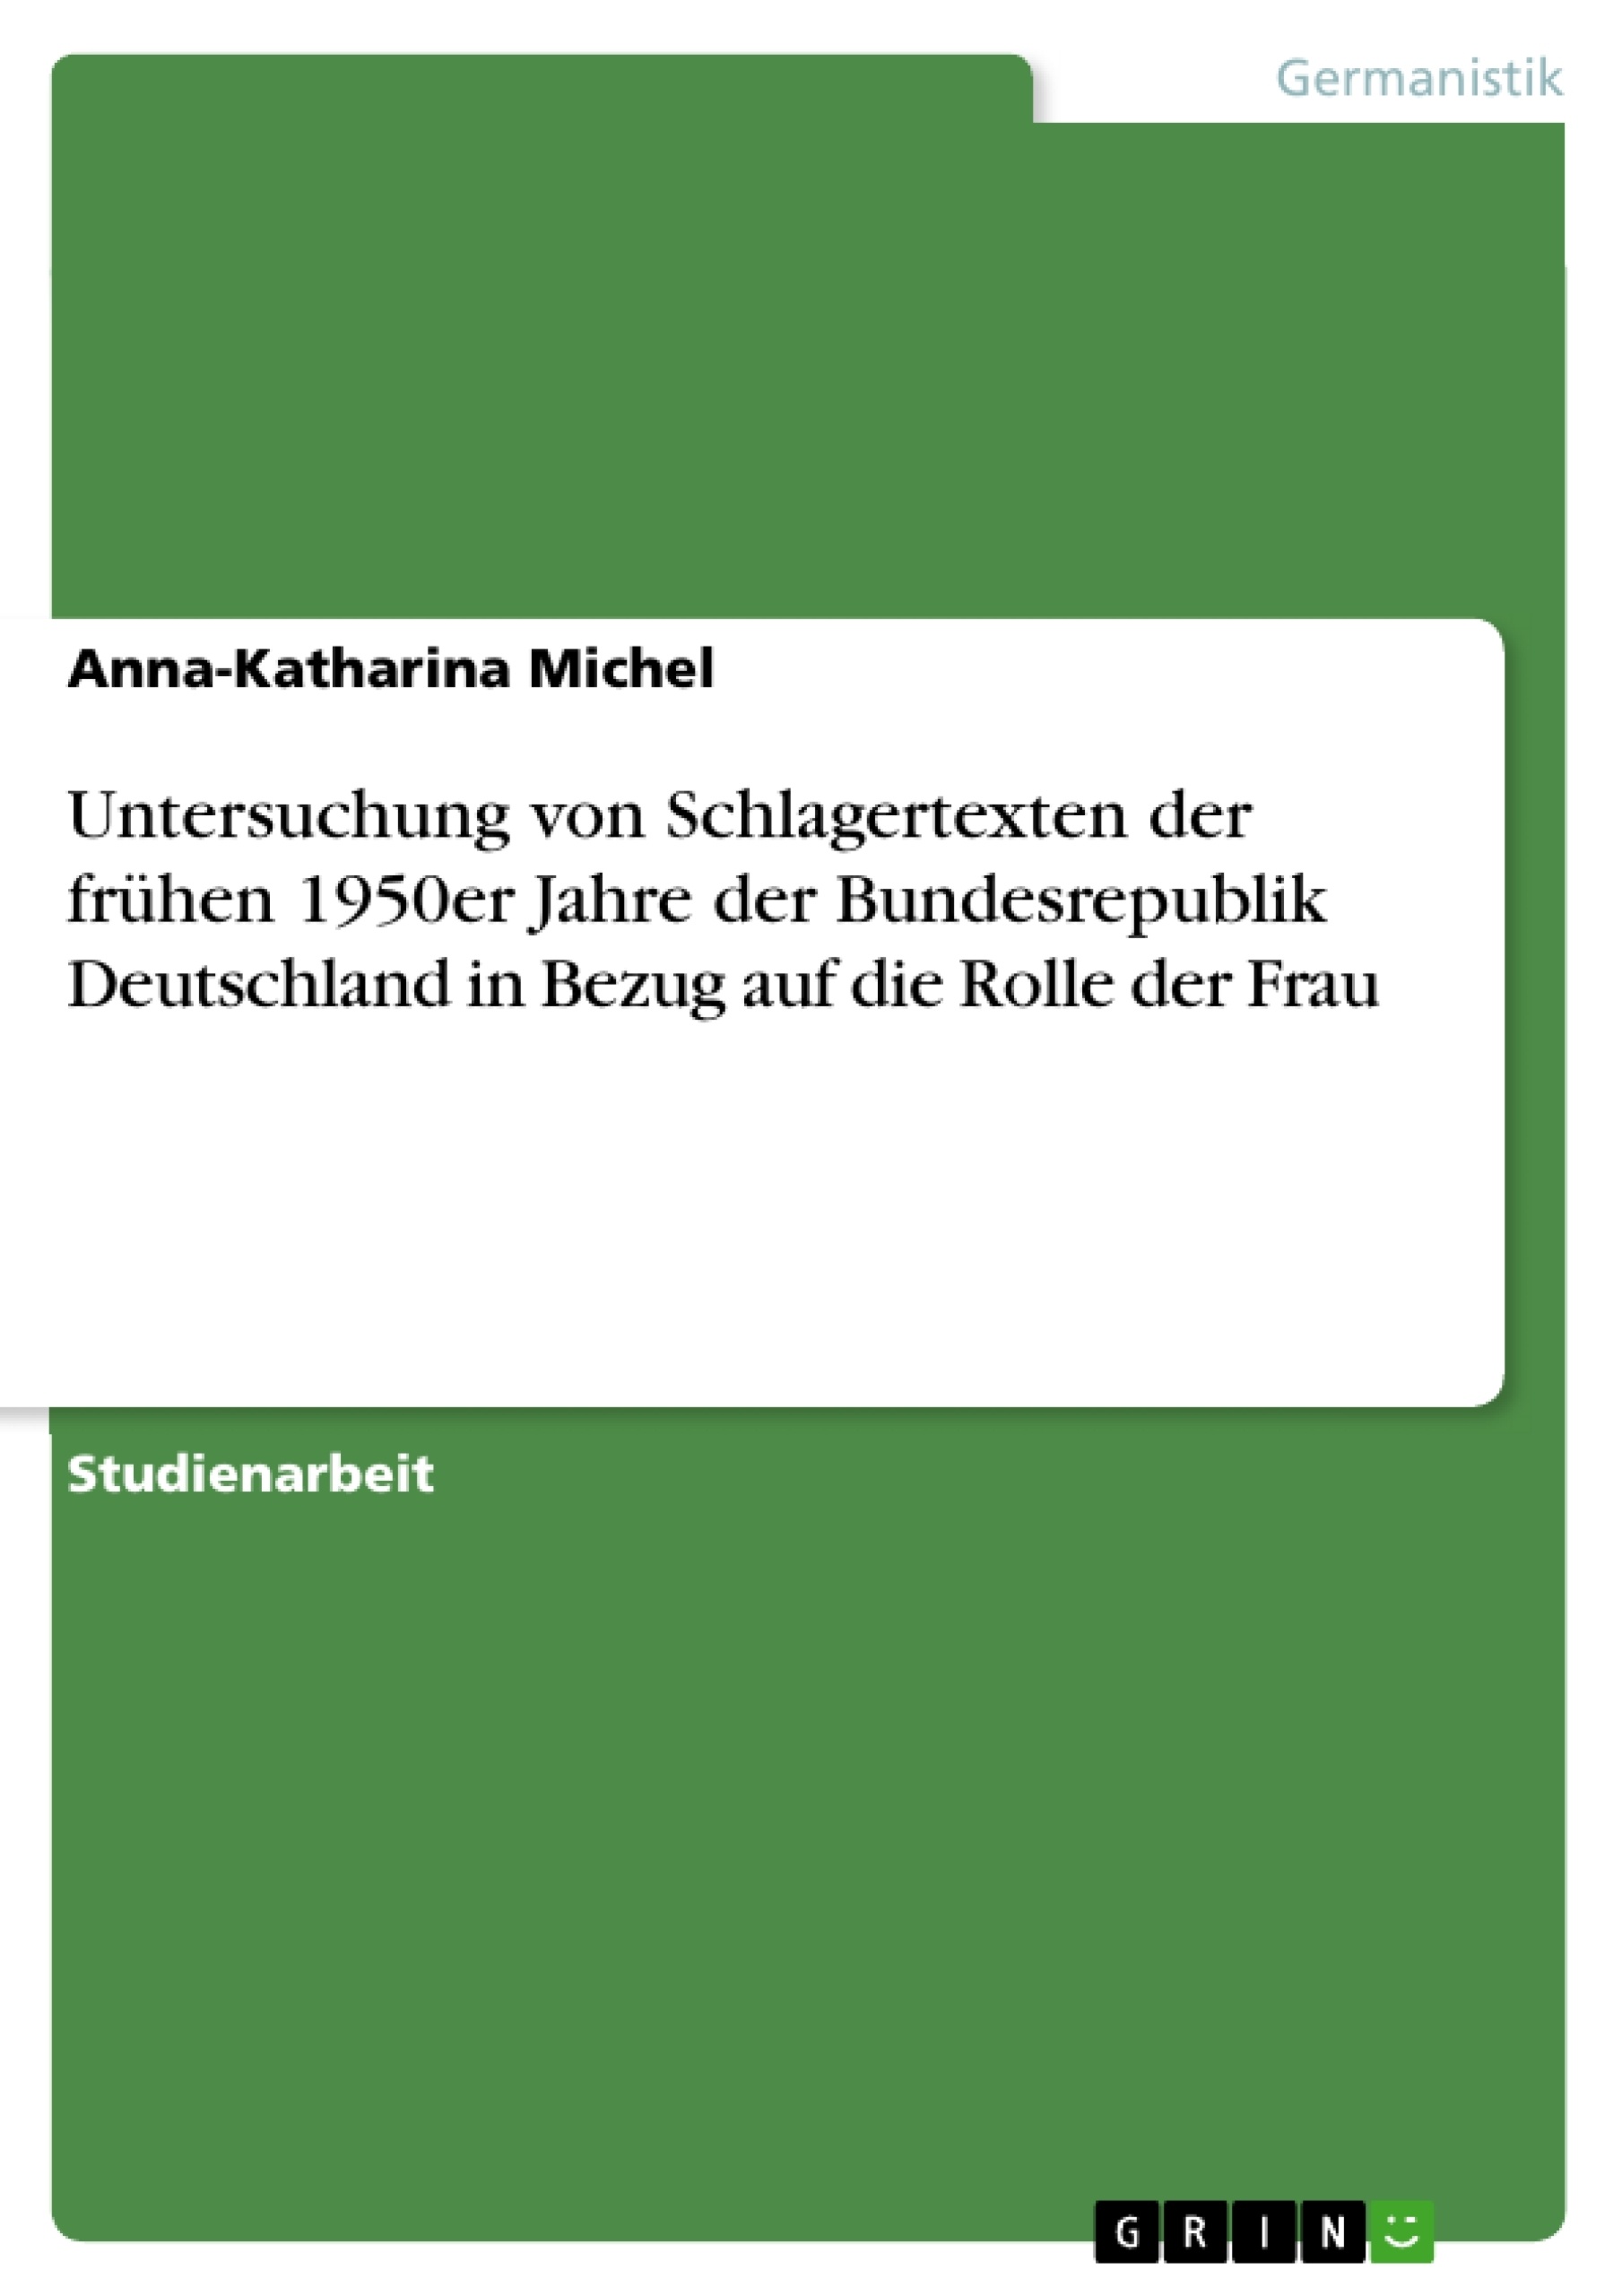 Title: Untersuchung von Schlagertexten der frühen 1950er Jahre der Bundesrepublik Deutschland in Bezug auf die Rolle der Frau